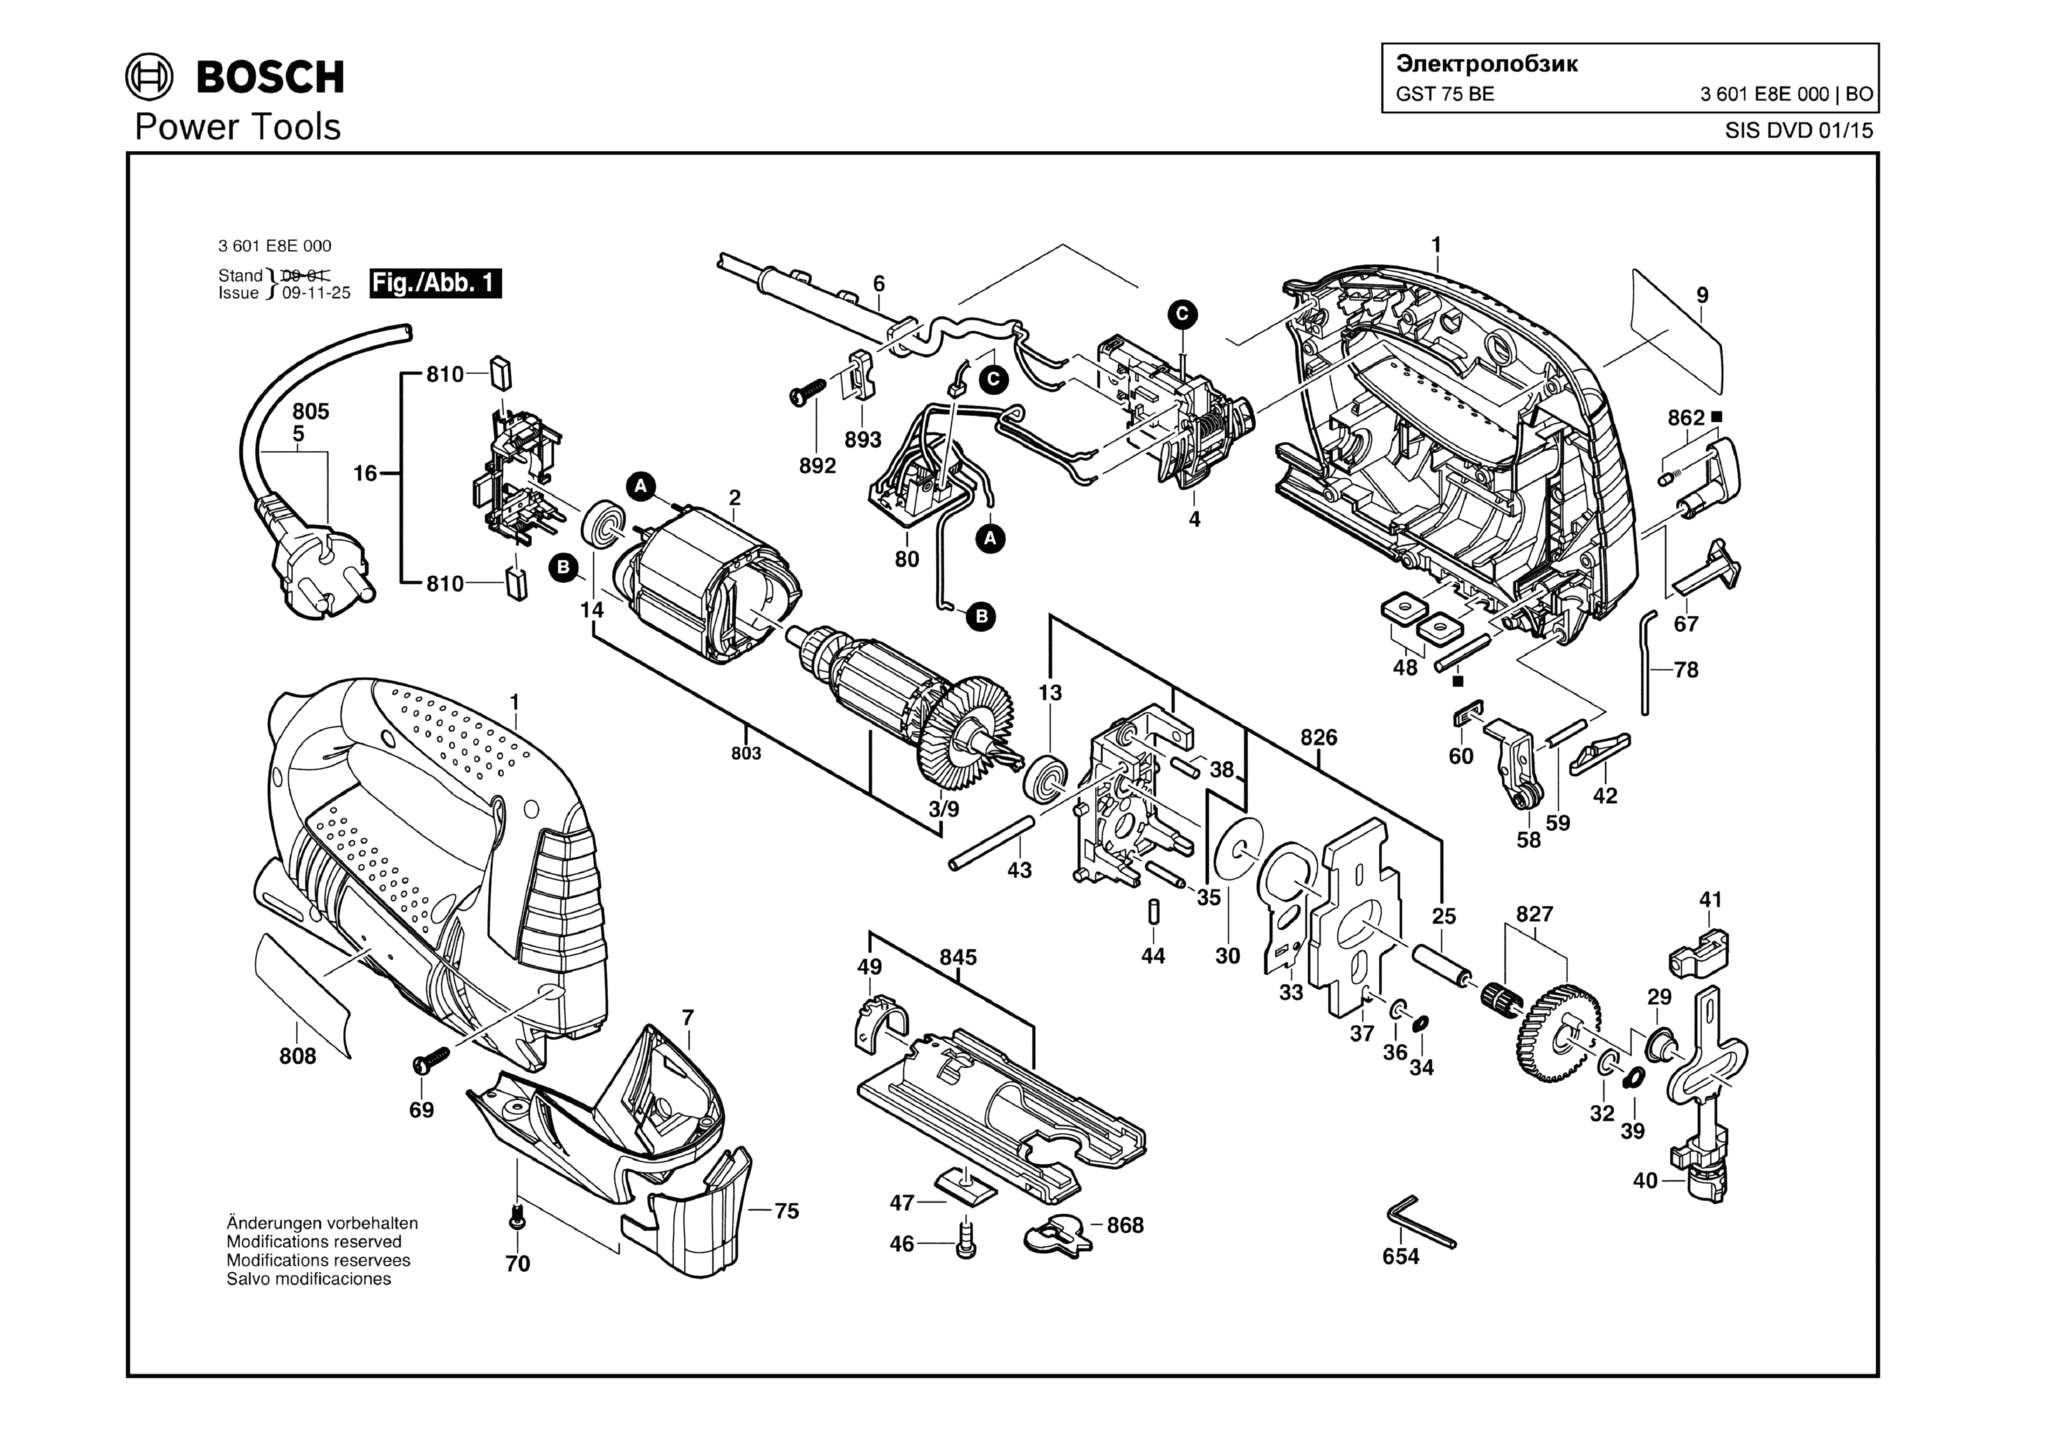 Запчасти, схема и деталировка Bosch GST 75 BE (ТИП 3601E8E000)